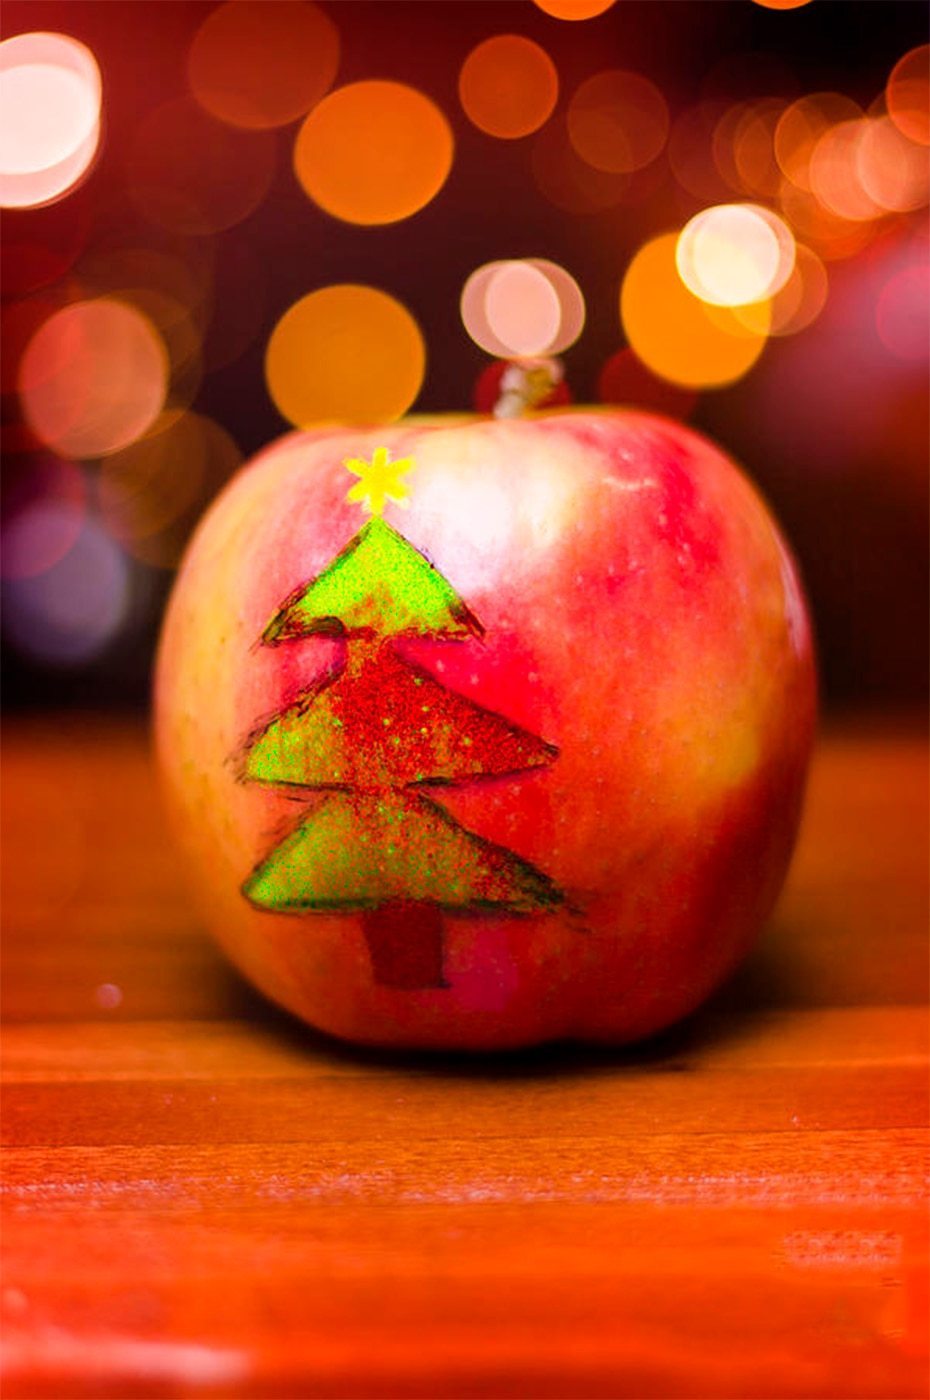 Christmas Tree on Apple DIY Diamond Painting - diamond-painting-bliss.myshopify.com